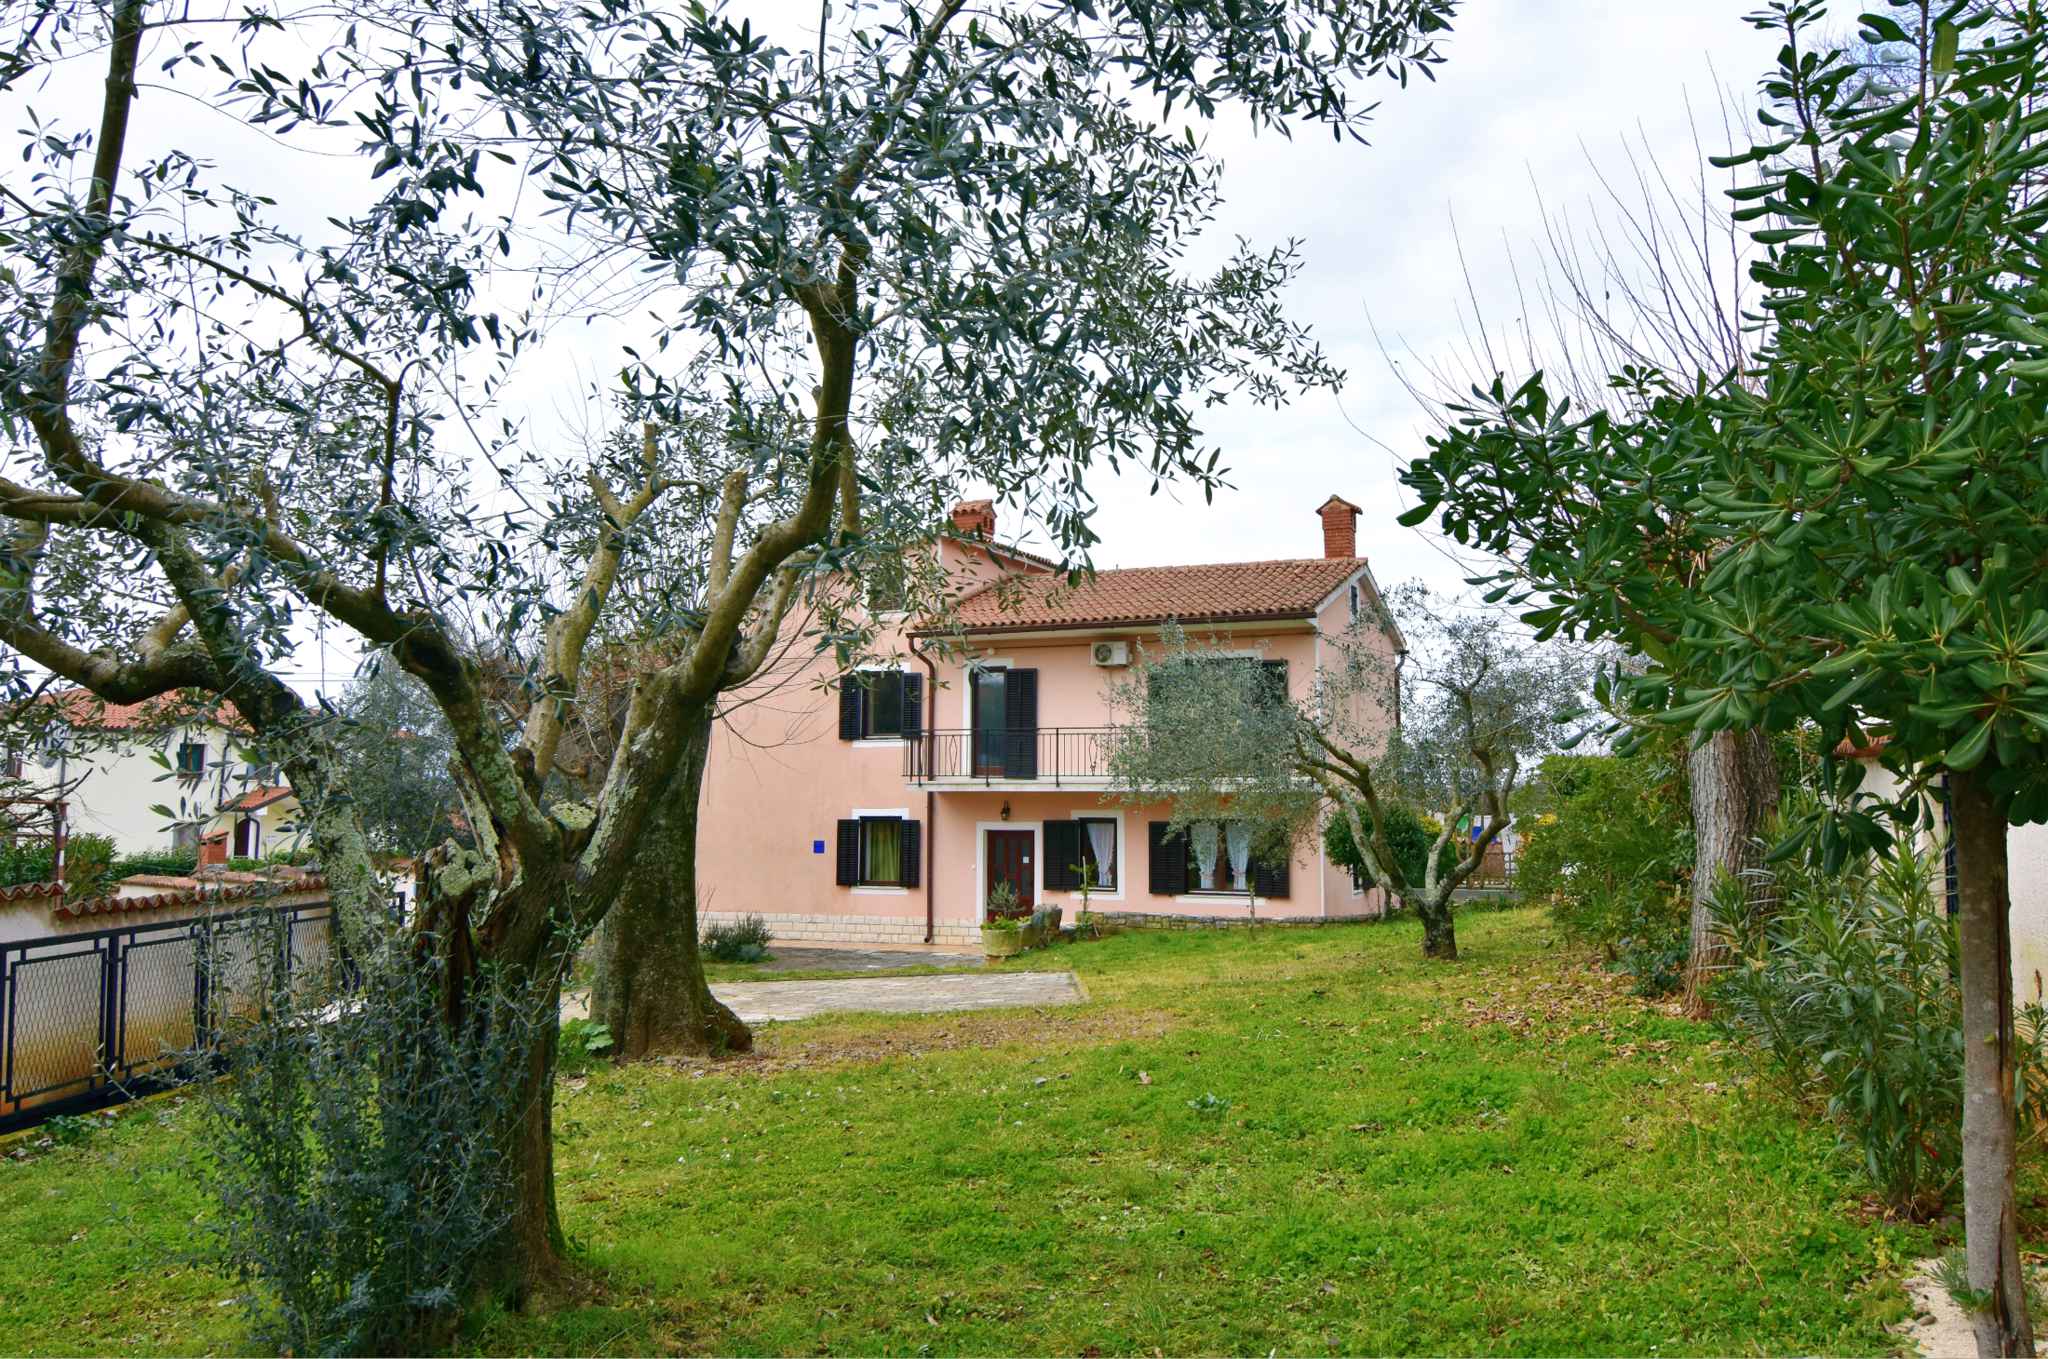 Ferienhaus modern für Gruppen, Familien und F Ferienhaus in Istrien